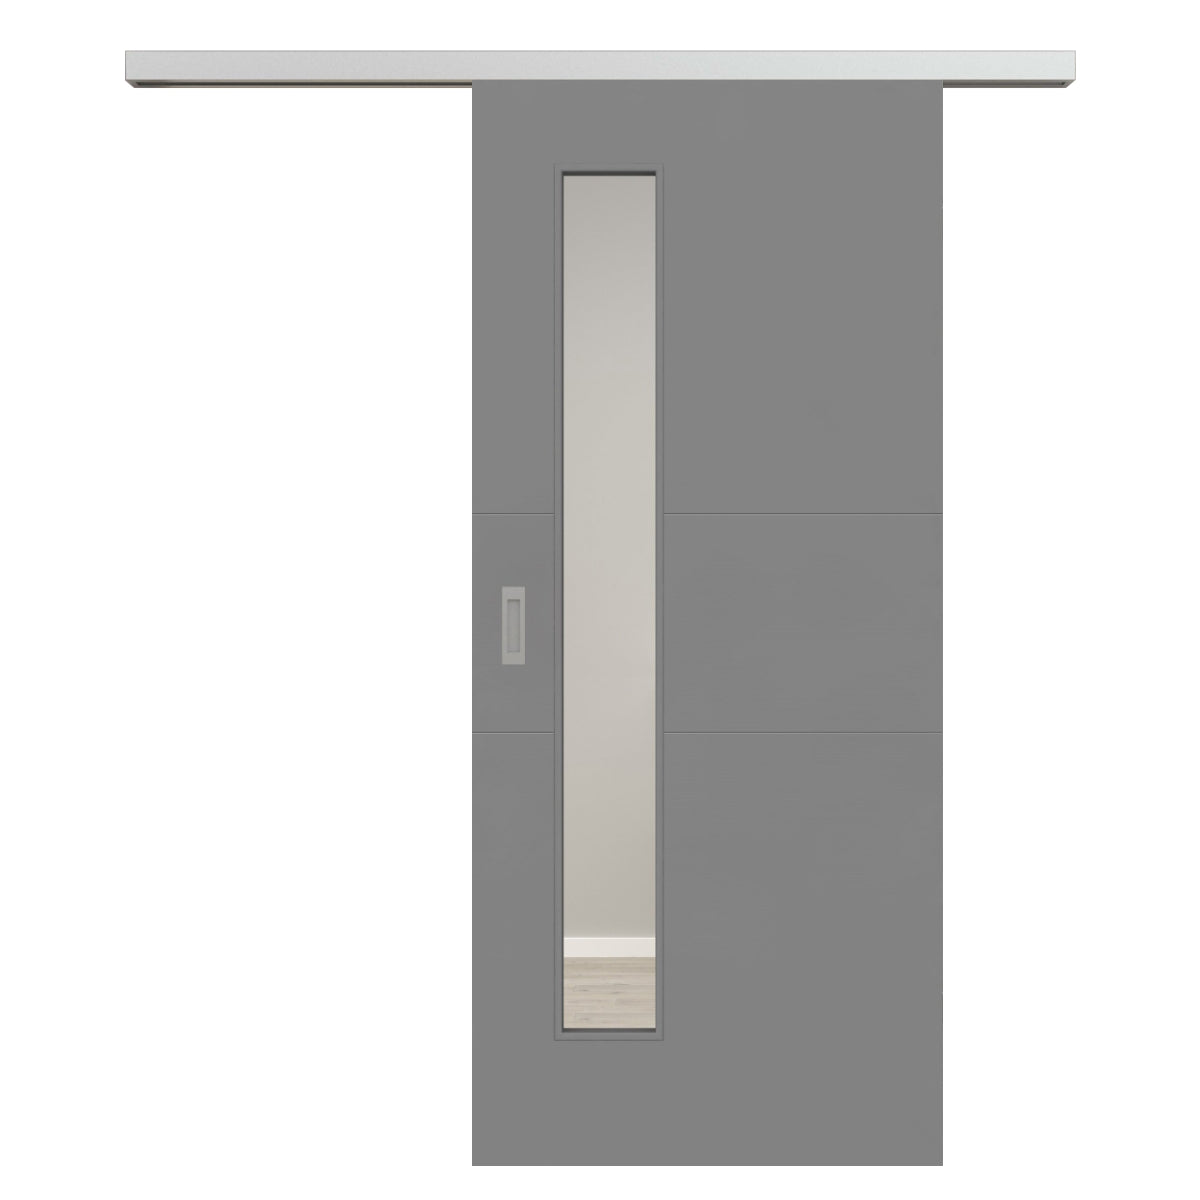 Schiebetür für Set mit Edelstahllaufkasten mit Lichtausschnitt grau 2 Rillen quer - Modell Designtür Q27LAS